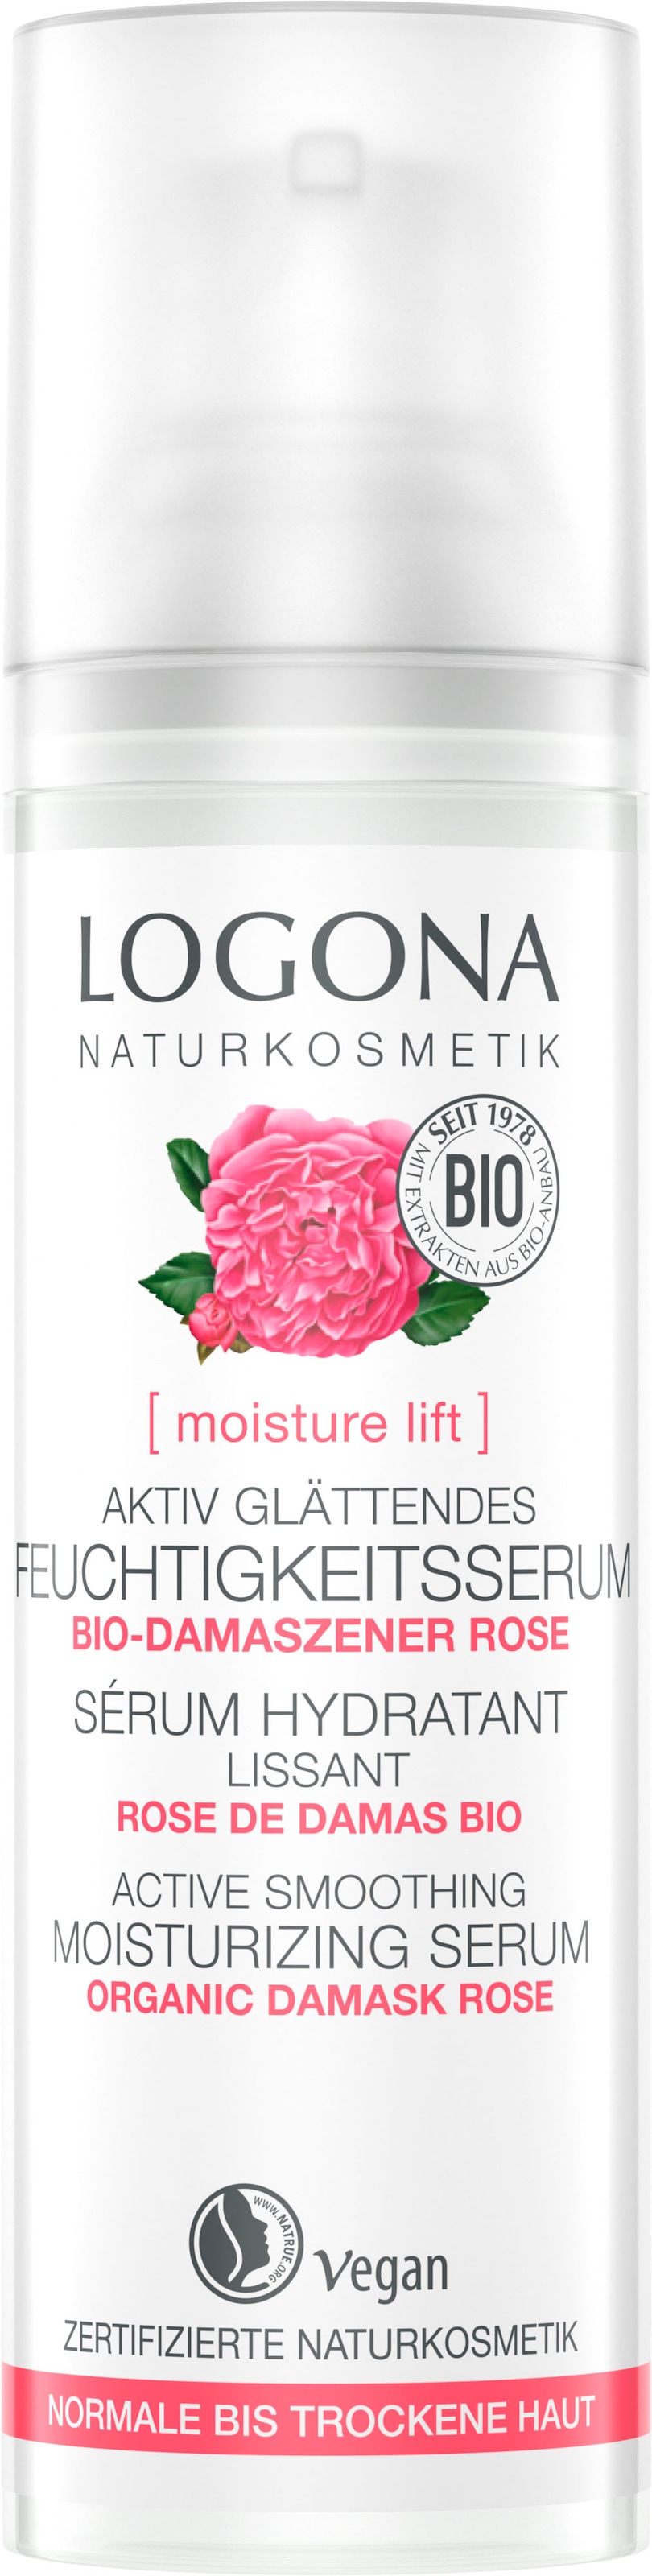 LOGONA Gesichtsserum »Logona moisture lift glätt | BAUR kaufen Feuchtigk.serum« online